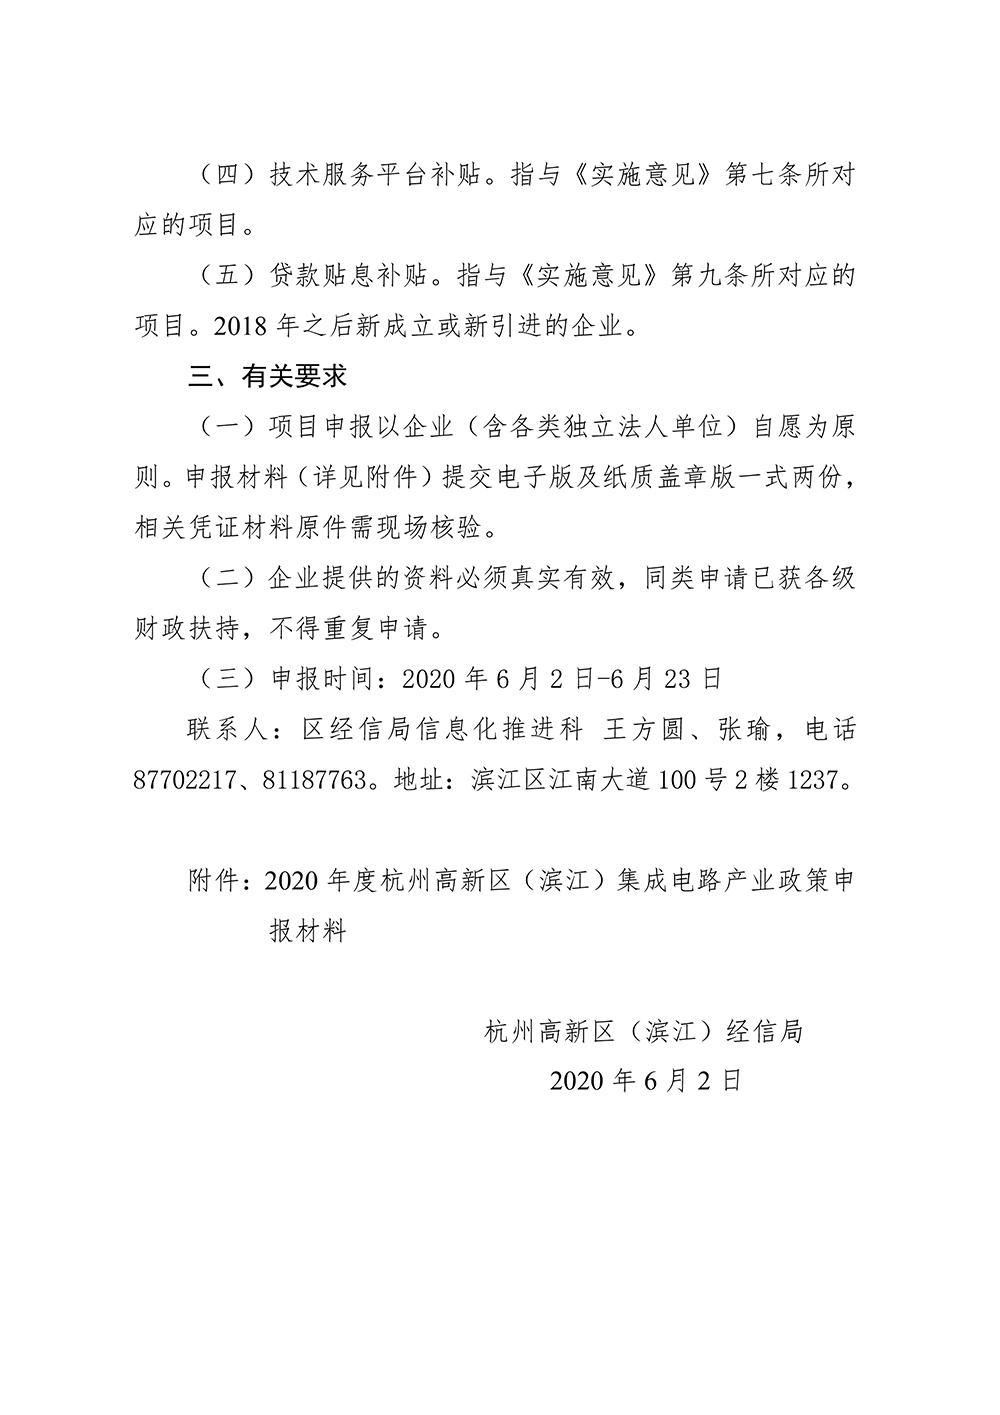 关于组织申报2020年度杭州高新区（滨江）集成电路产业政策的通知_20200622170739-2.jpg